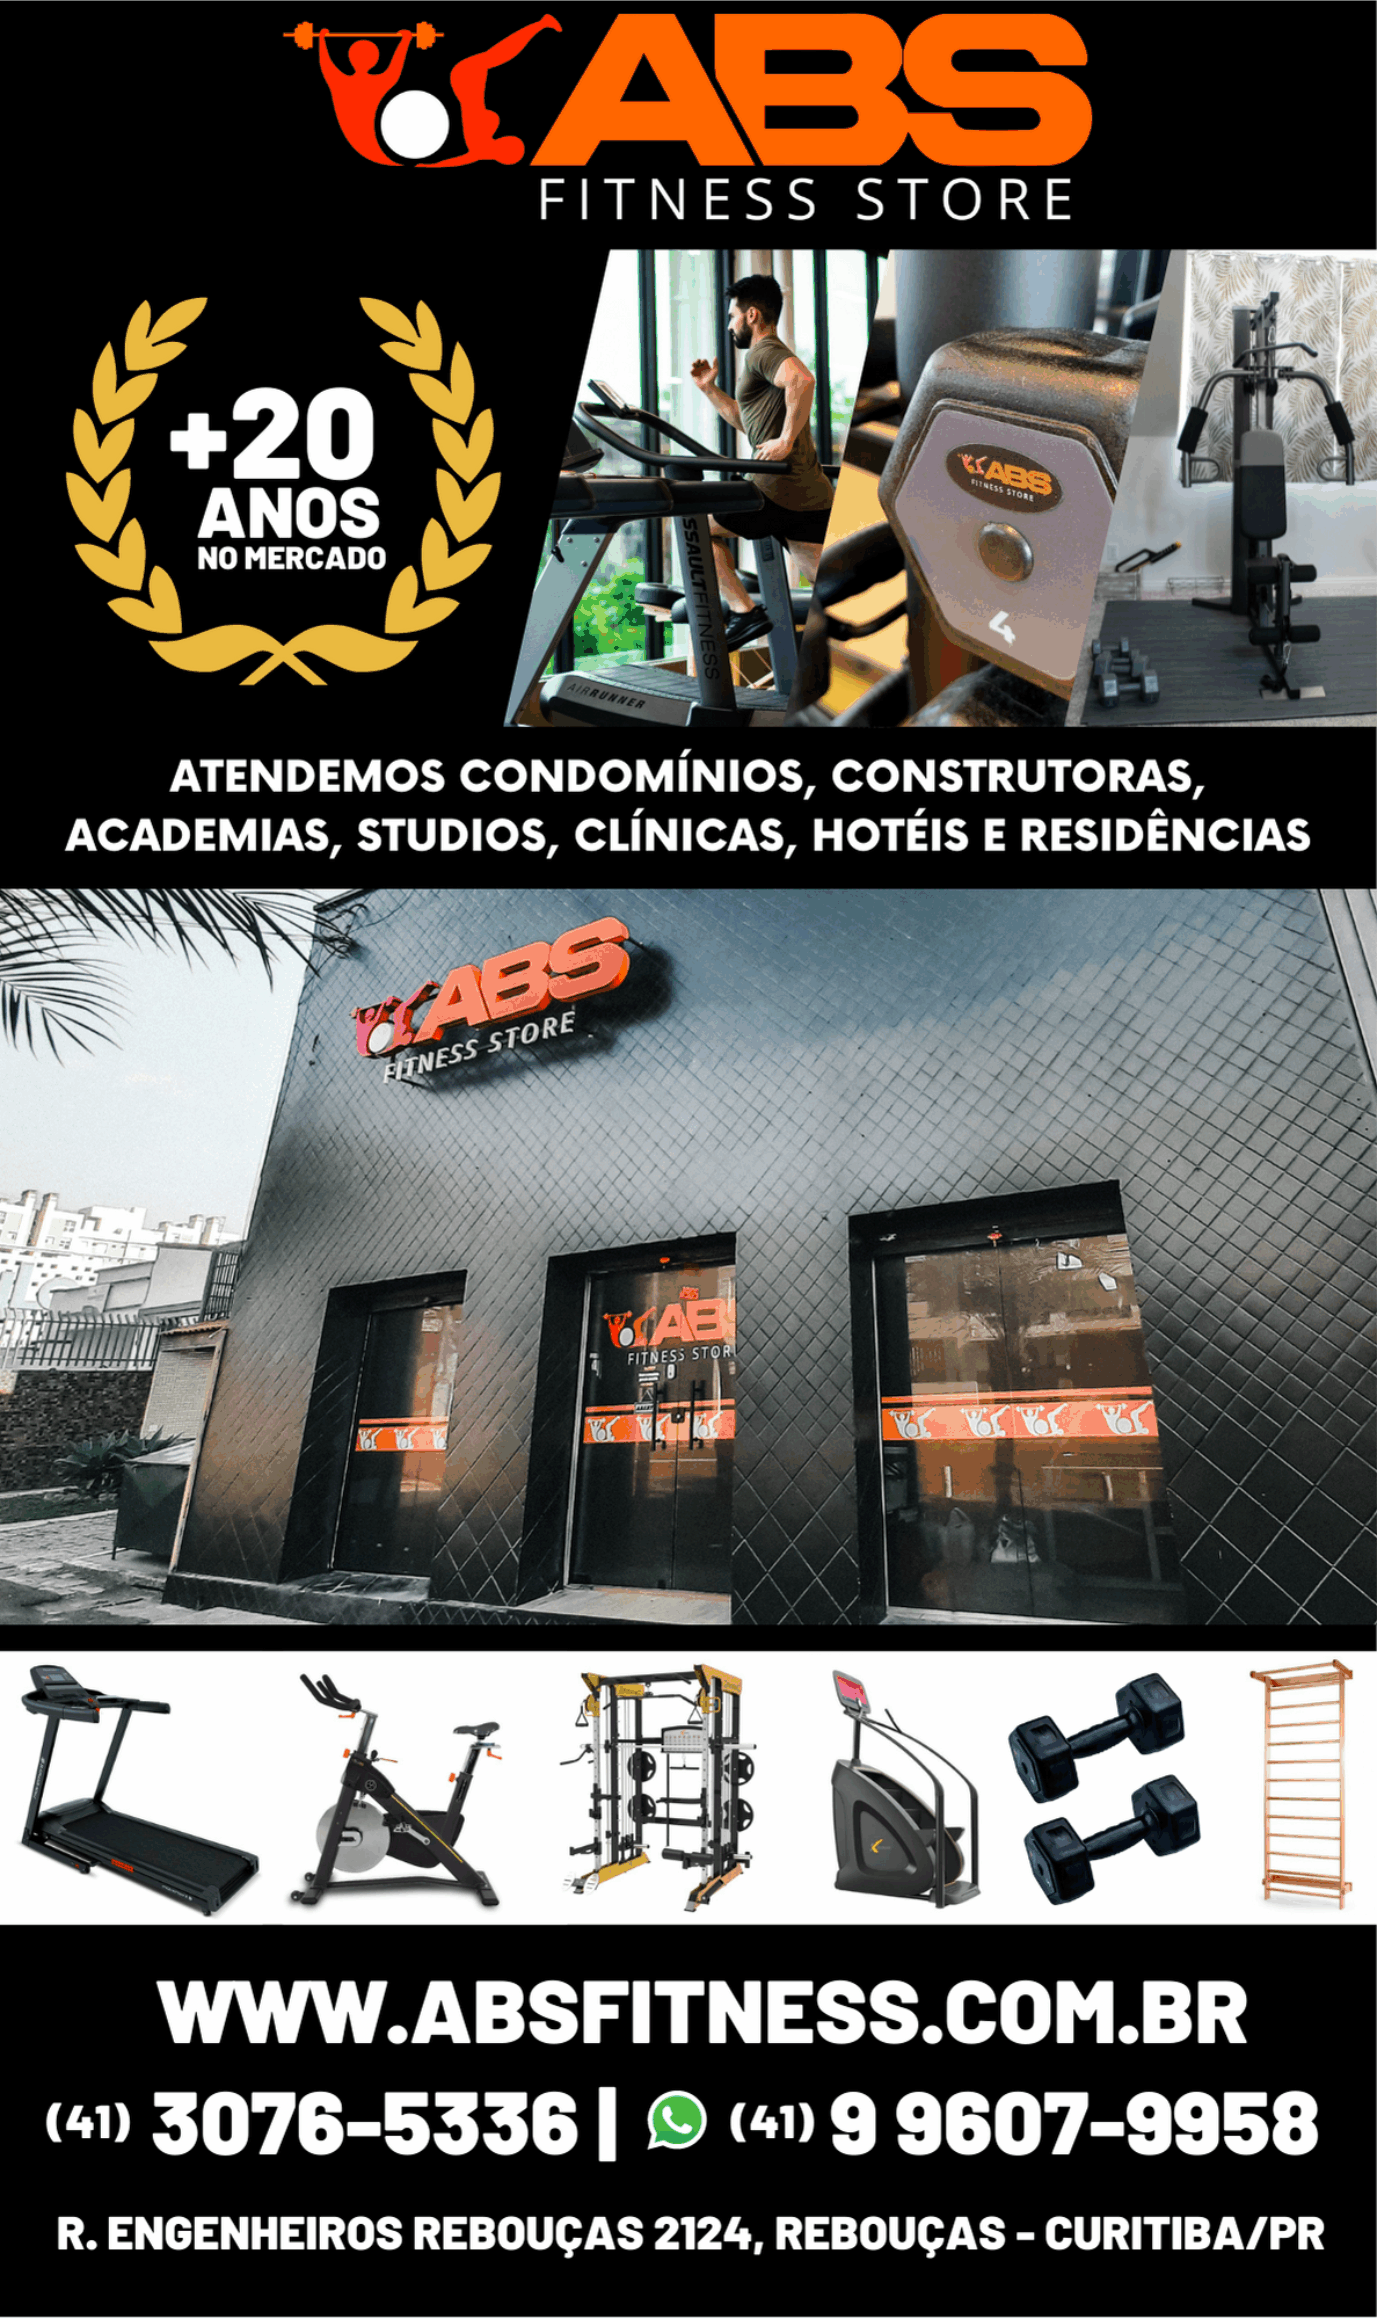 ABS Fitness Store       RUA ENGENHEIROS REBOUÇAS, 2149, CURITIBA - PR  Fones: (41) 3076-5336 /